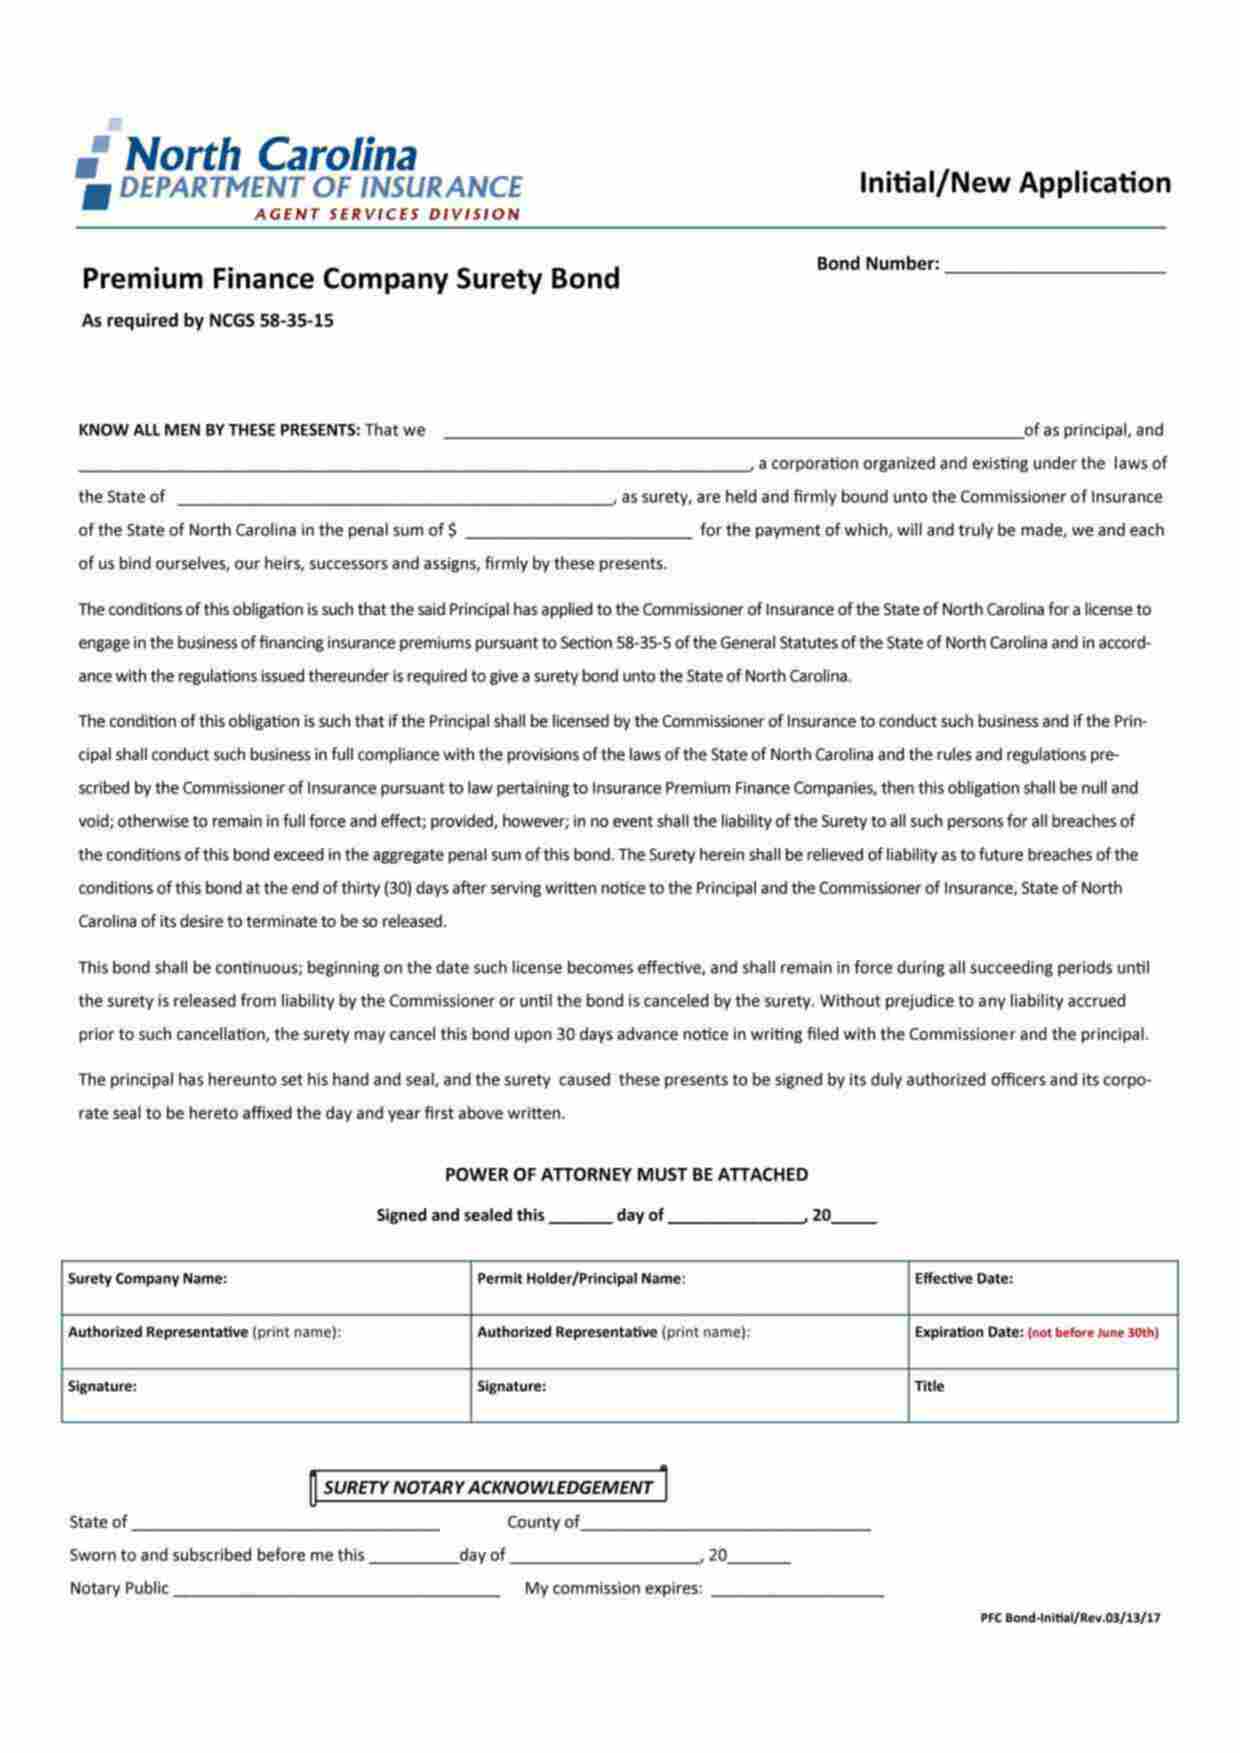 North Carolina Premium Finance Company Bond Form